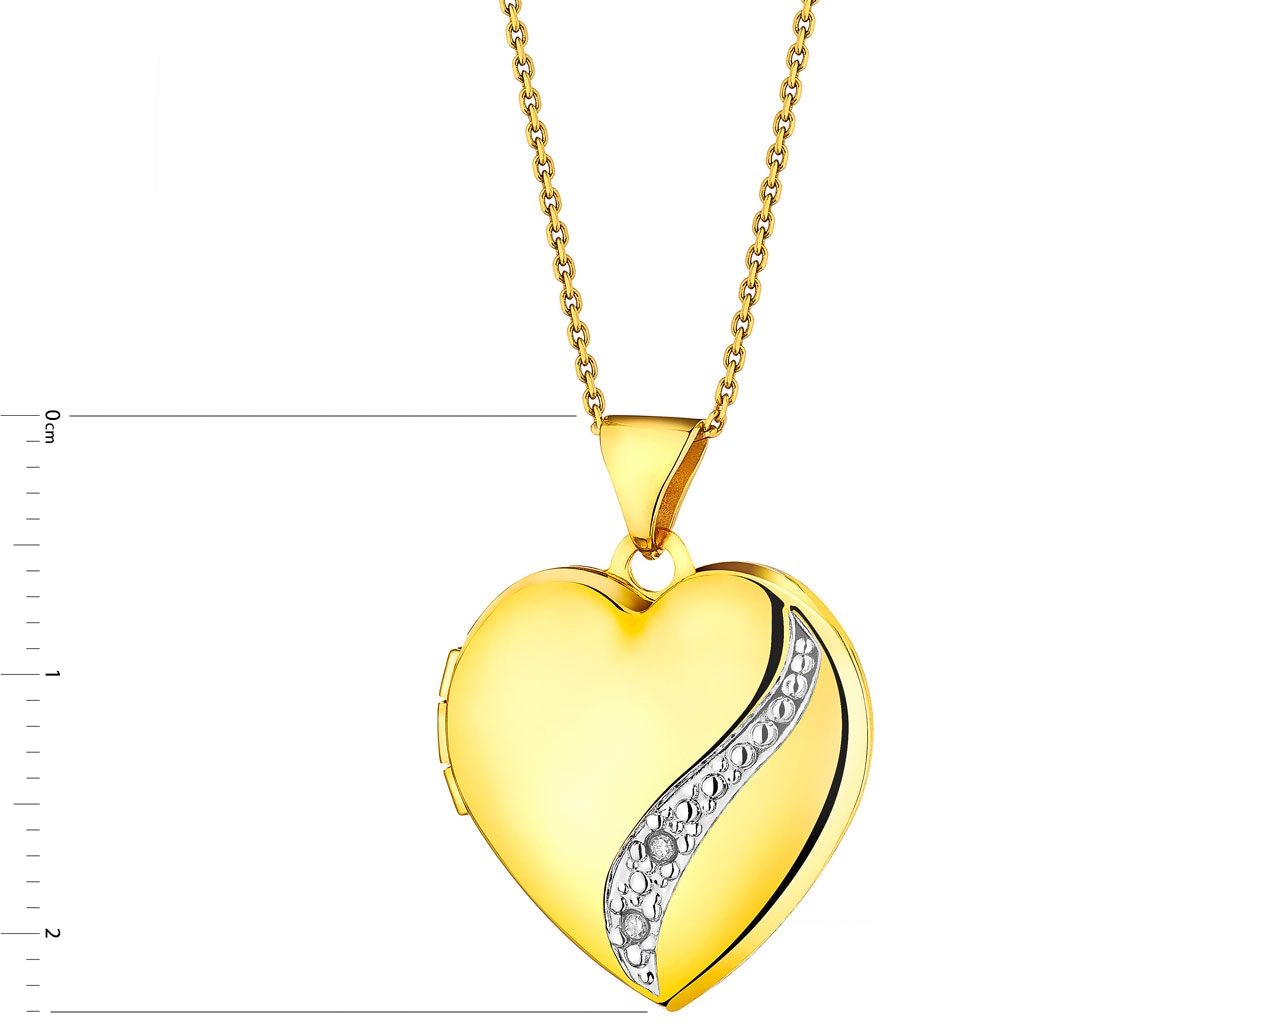 Puzderko z żółtego złota z diamentami - serce 0,01 ct - próba 375